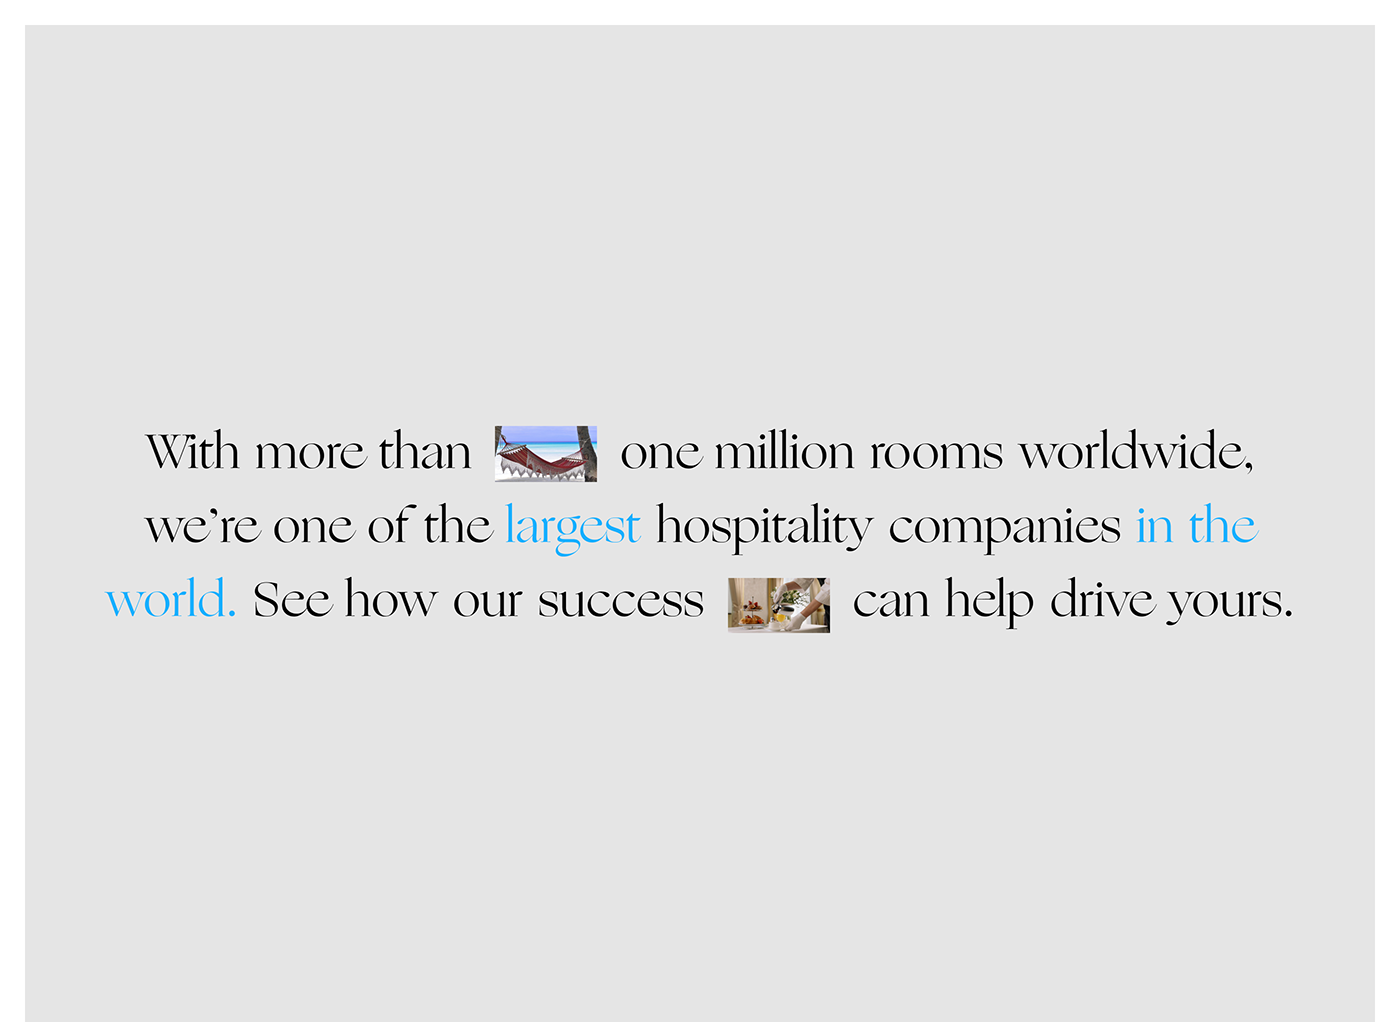 corporate Hilton hotel Web Design  Website